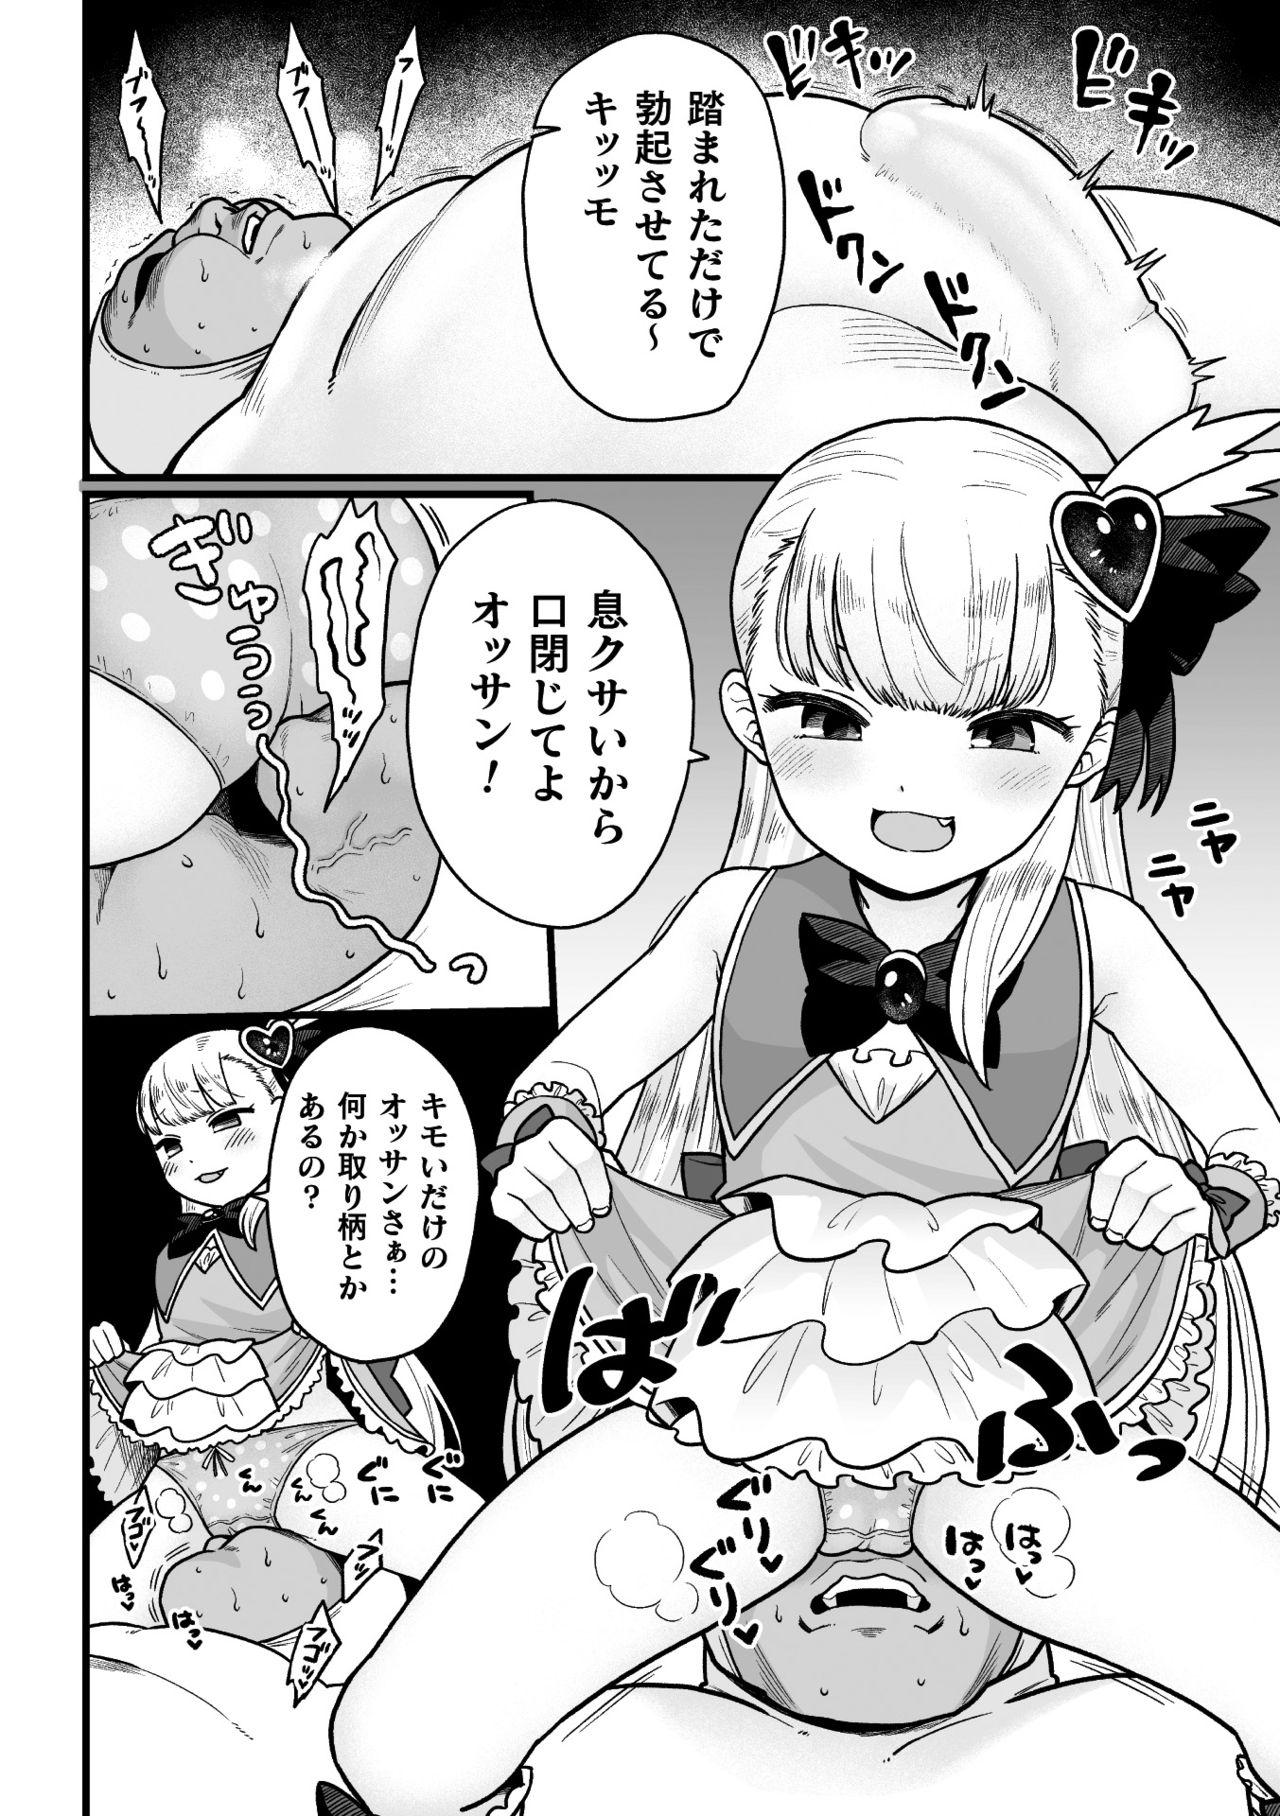 Lesbians Nijigen komikku magajin mesugaki henshin hiroin kikaikan seisai hijō no wakara se mashin de renzoku roriakume Shavedpussy - Page 6